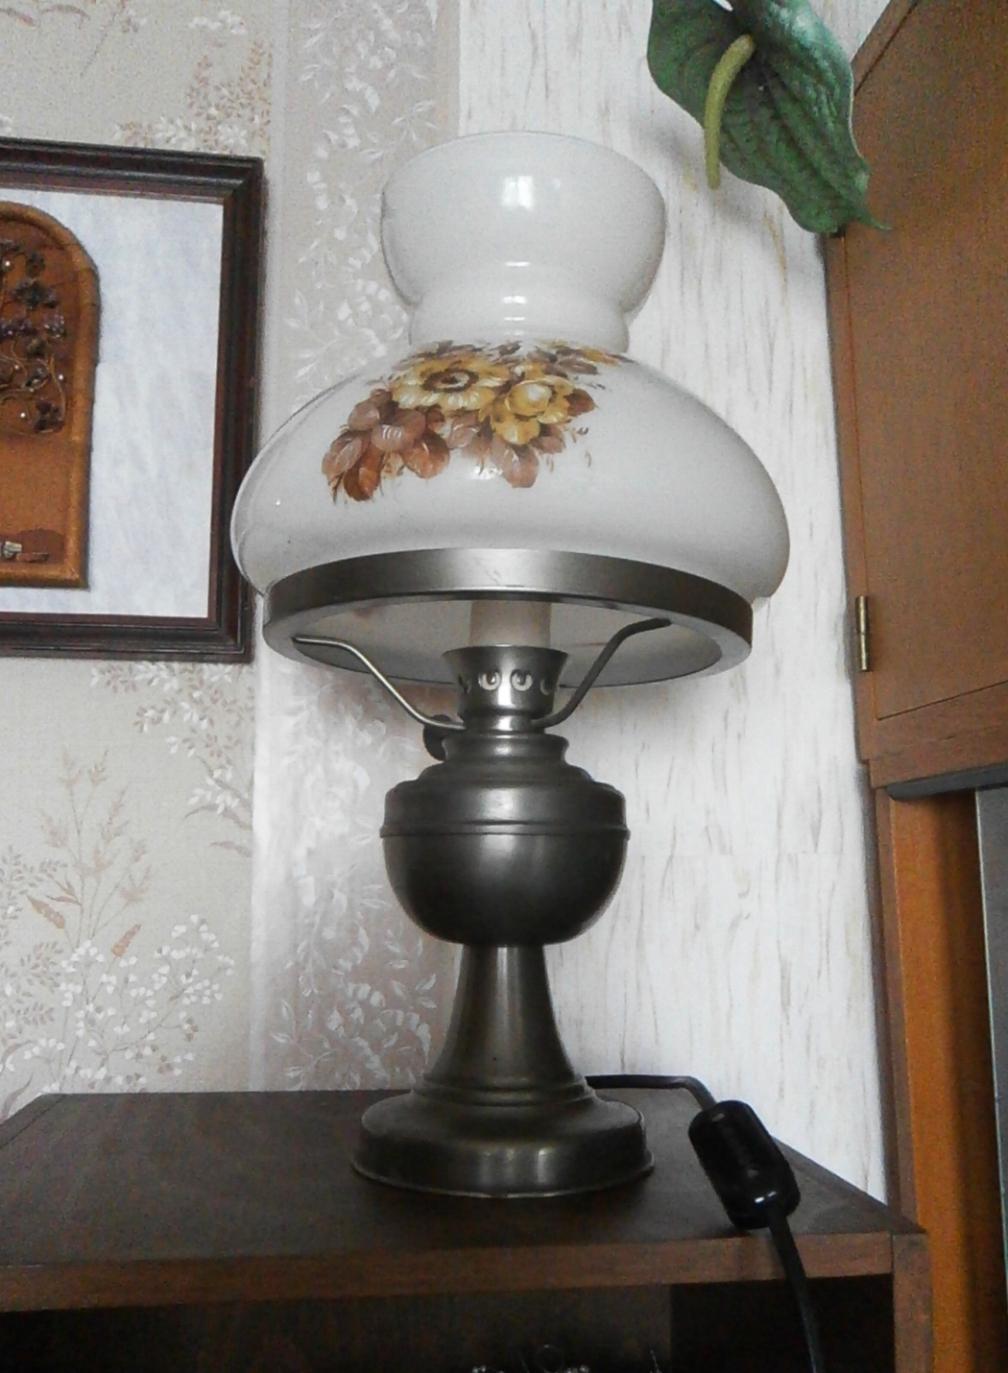 Lampa elektrická petrolejka kovový podstavec, malovaný skleněný kryt - Obrázek č. 4